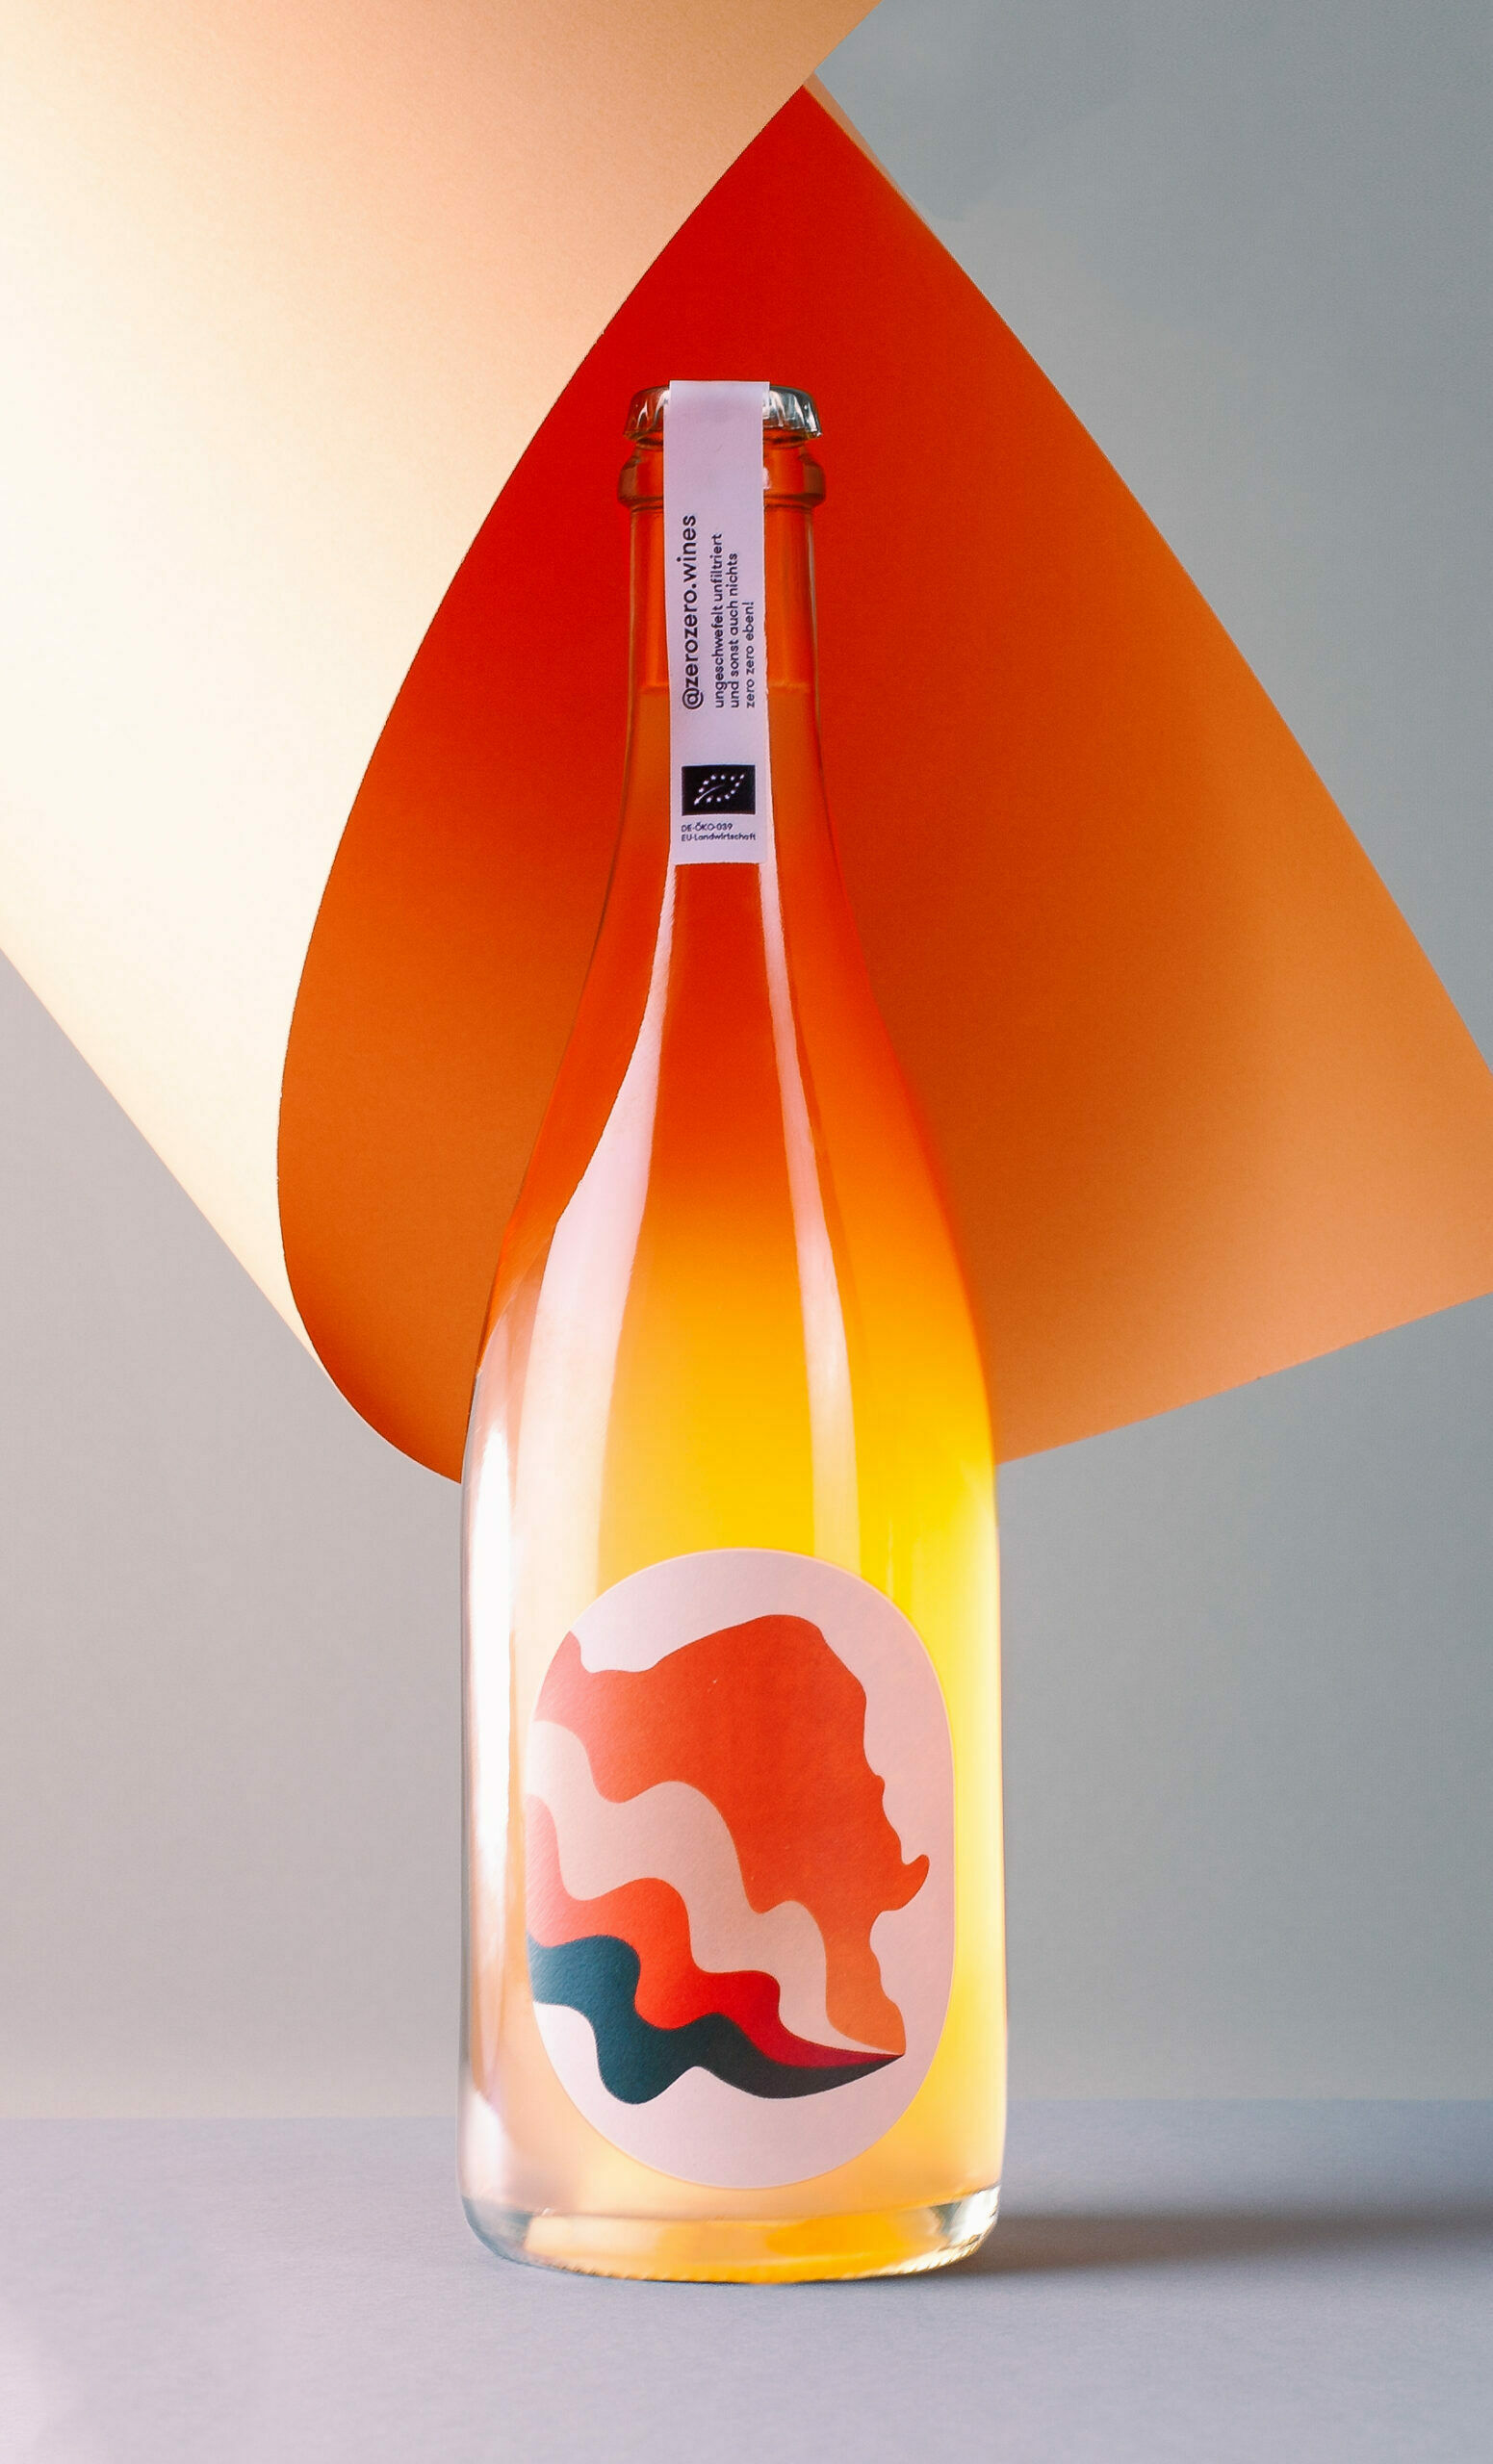 Eine Flasche Pet Nat Orange, die vor einem grau-orangenen Hintergrund steht.